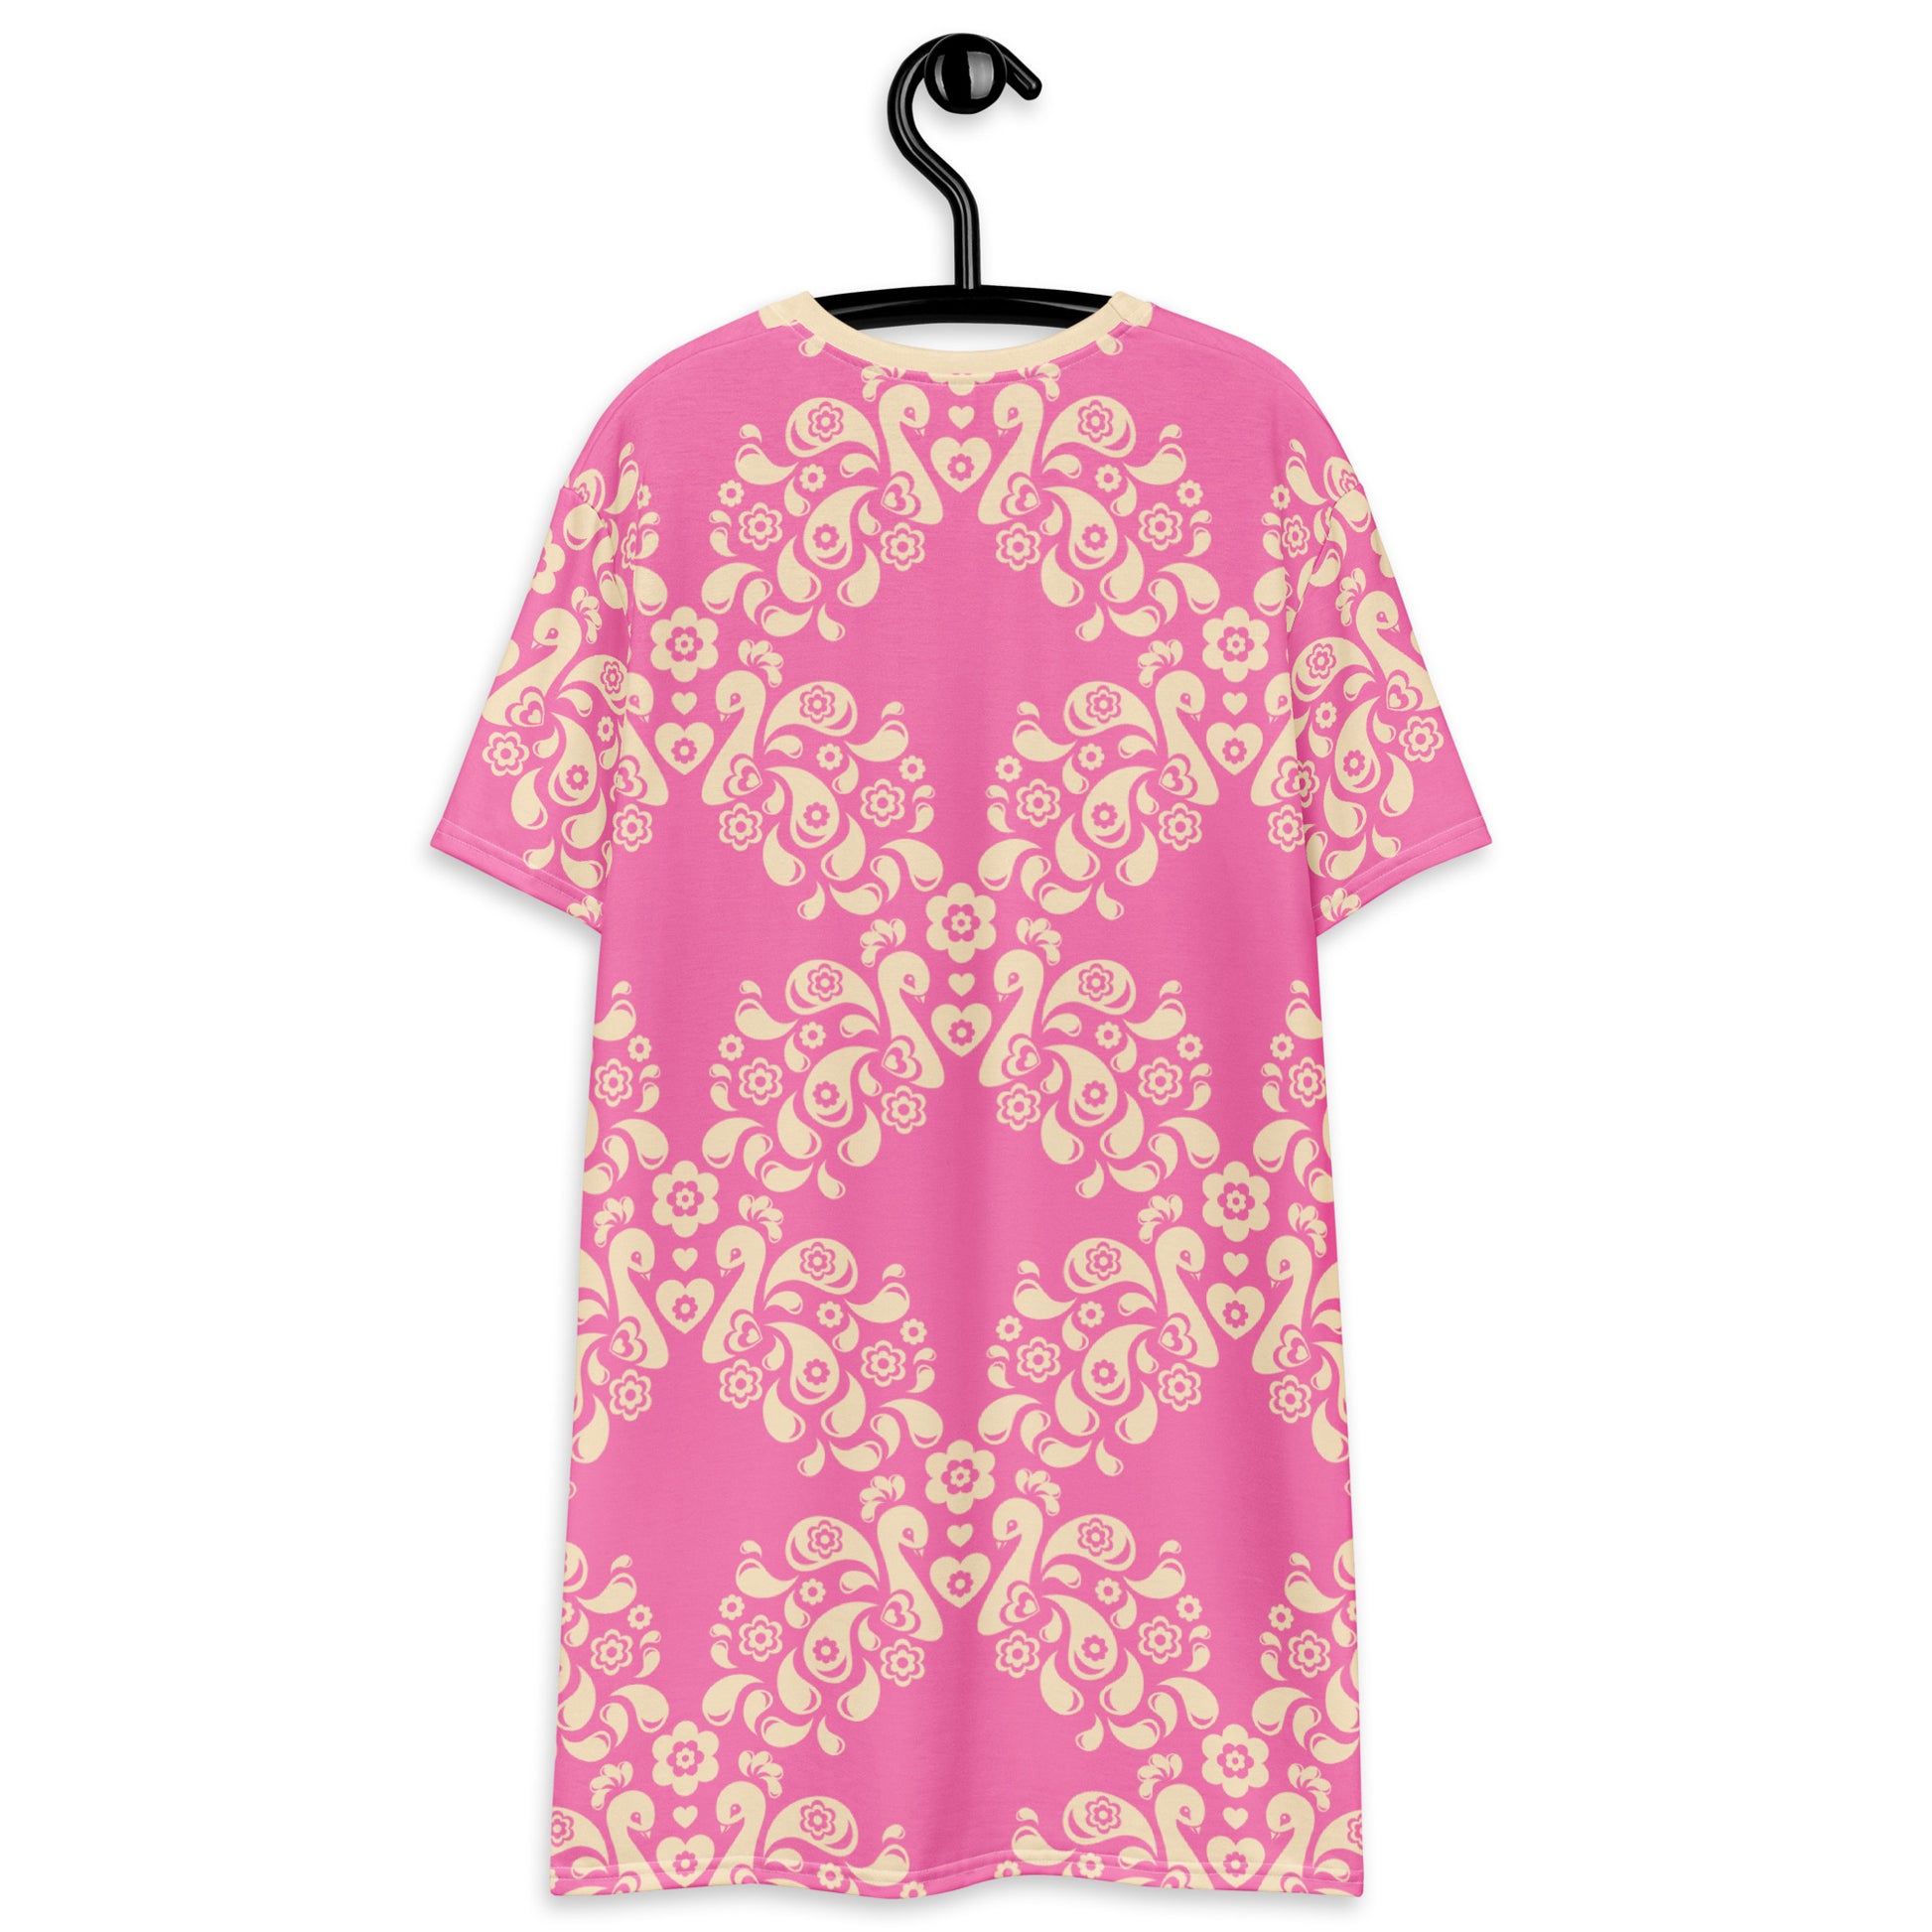 PEACOCK LOVE pink - T-shirt dress